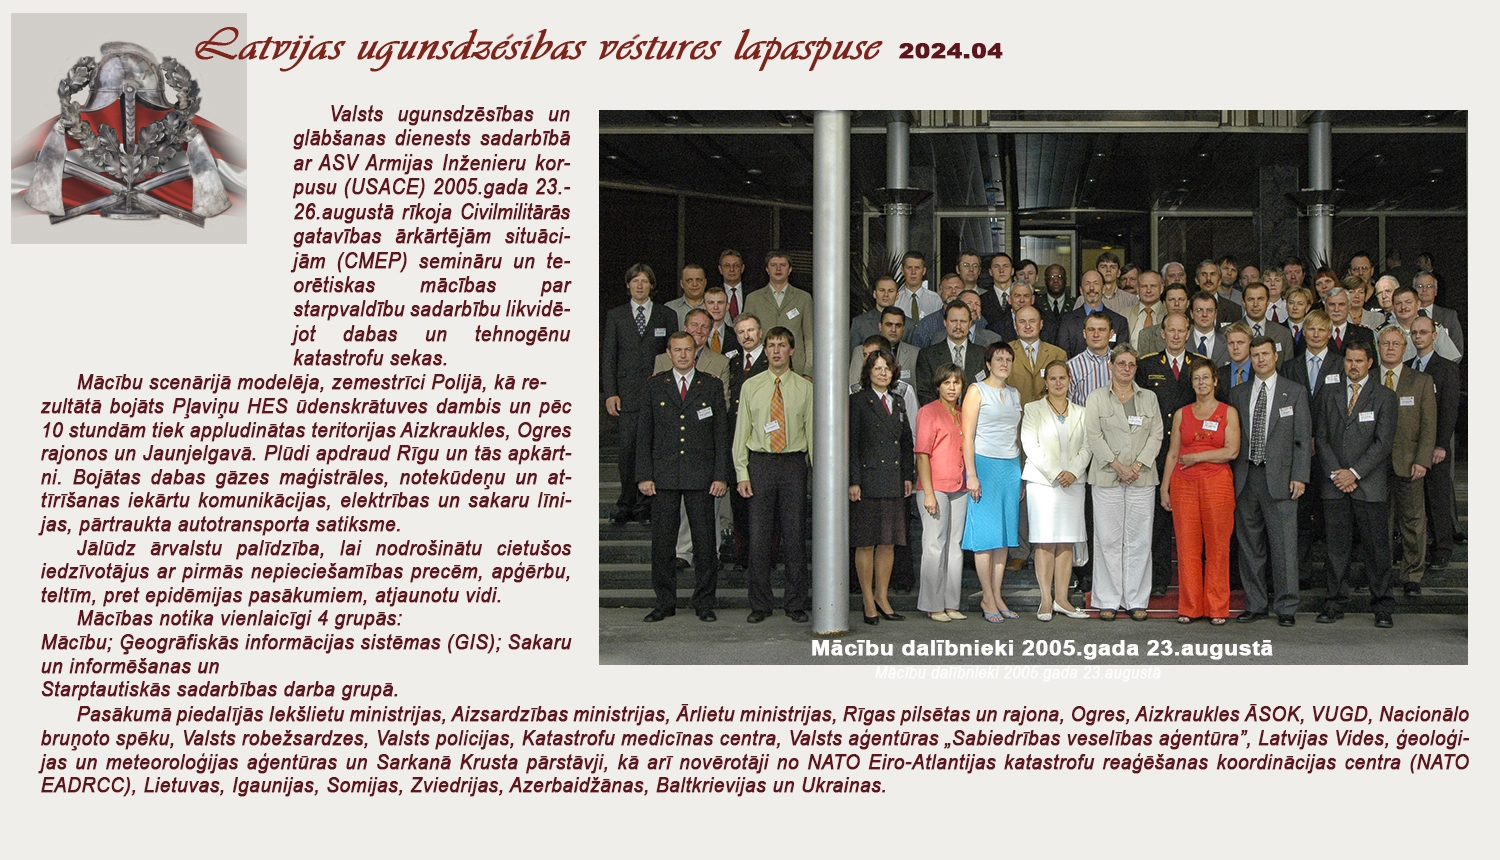 Fotokolāža teksts par Rīgā notikušajām CEMP mācībām 2005.gada 23.augustā un kopbilde ar visiem mācību dalībniekiem